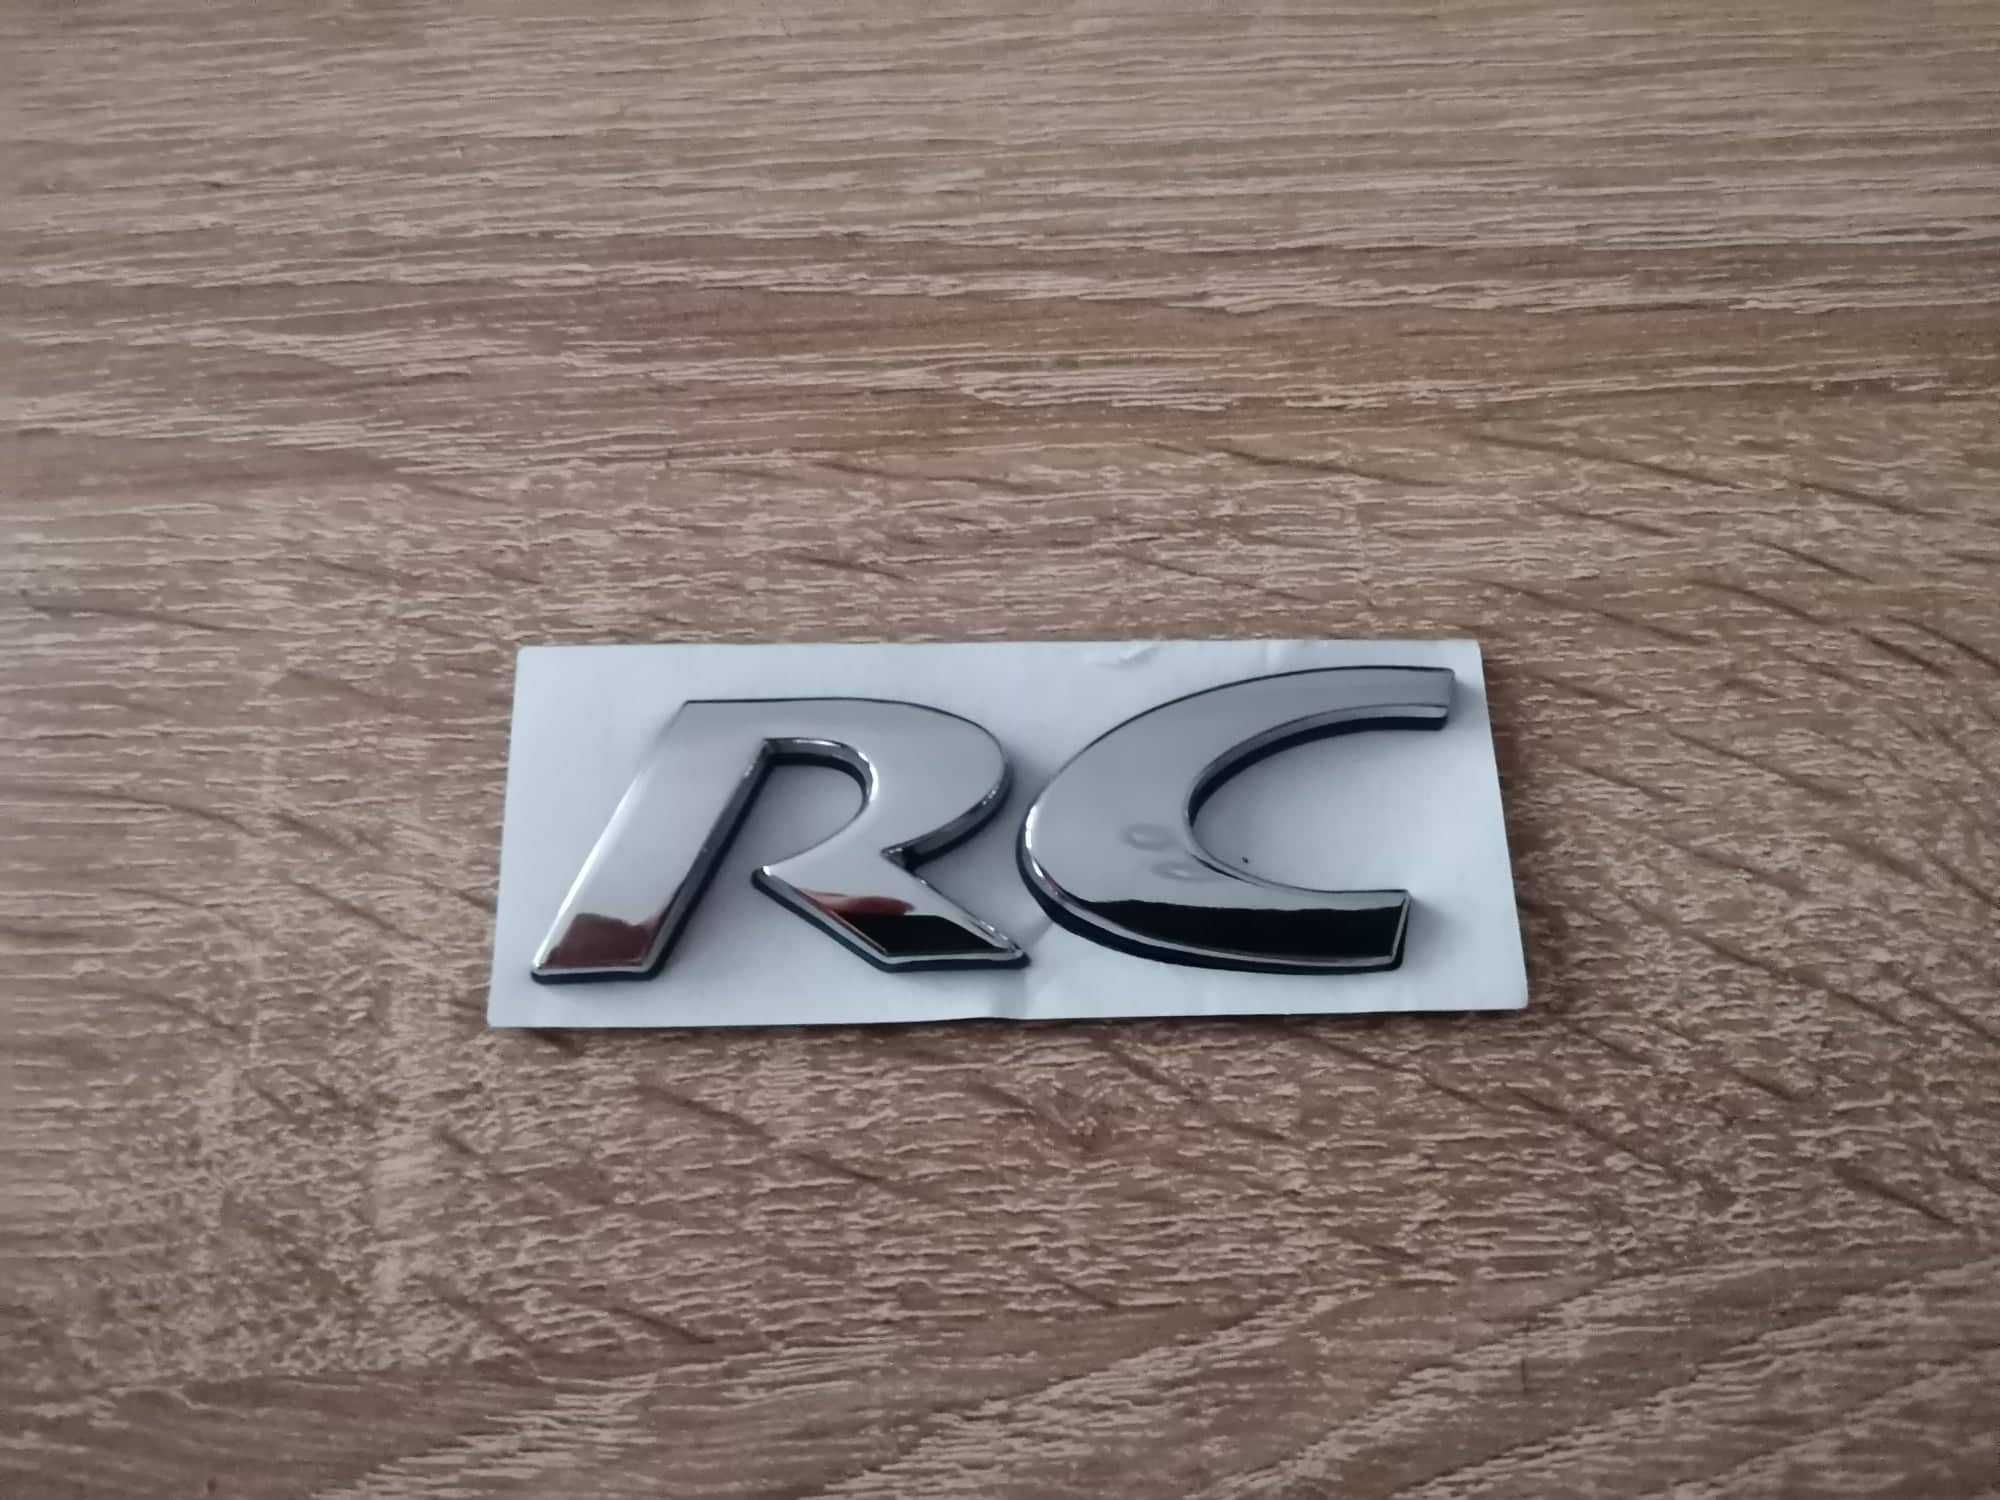 Peugeot РС Пежо RC сребриста емблема надпис